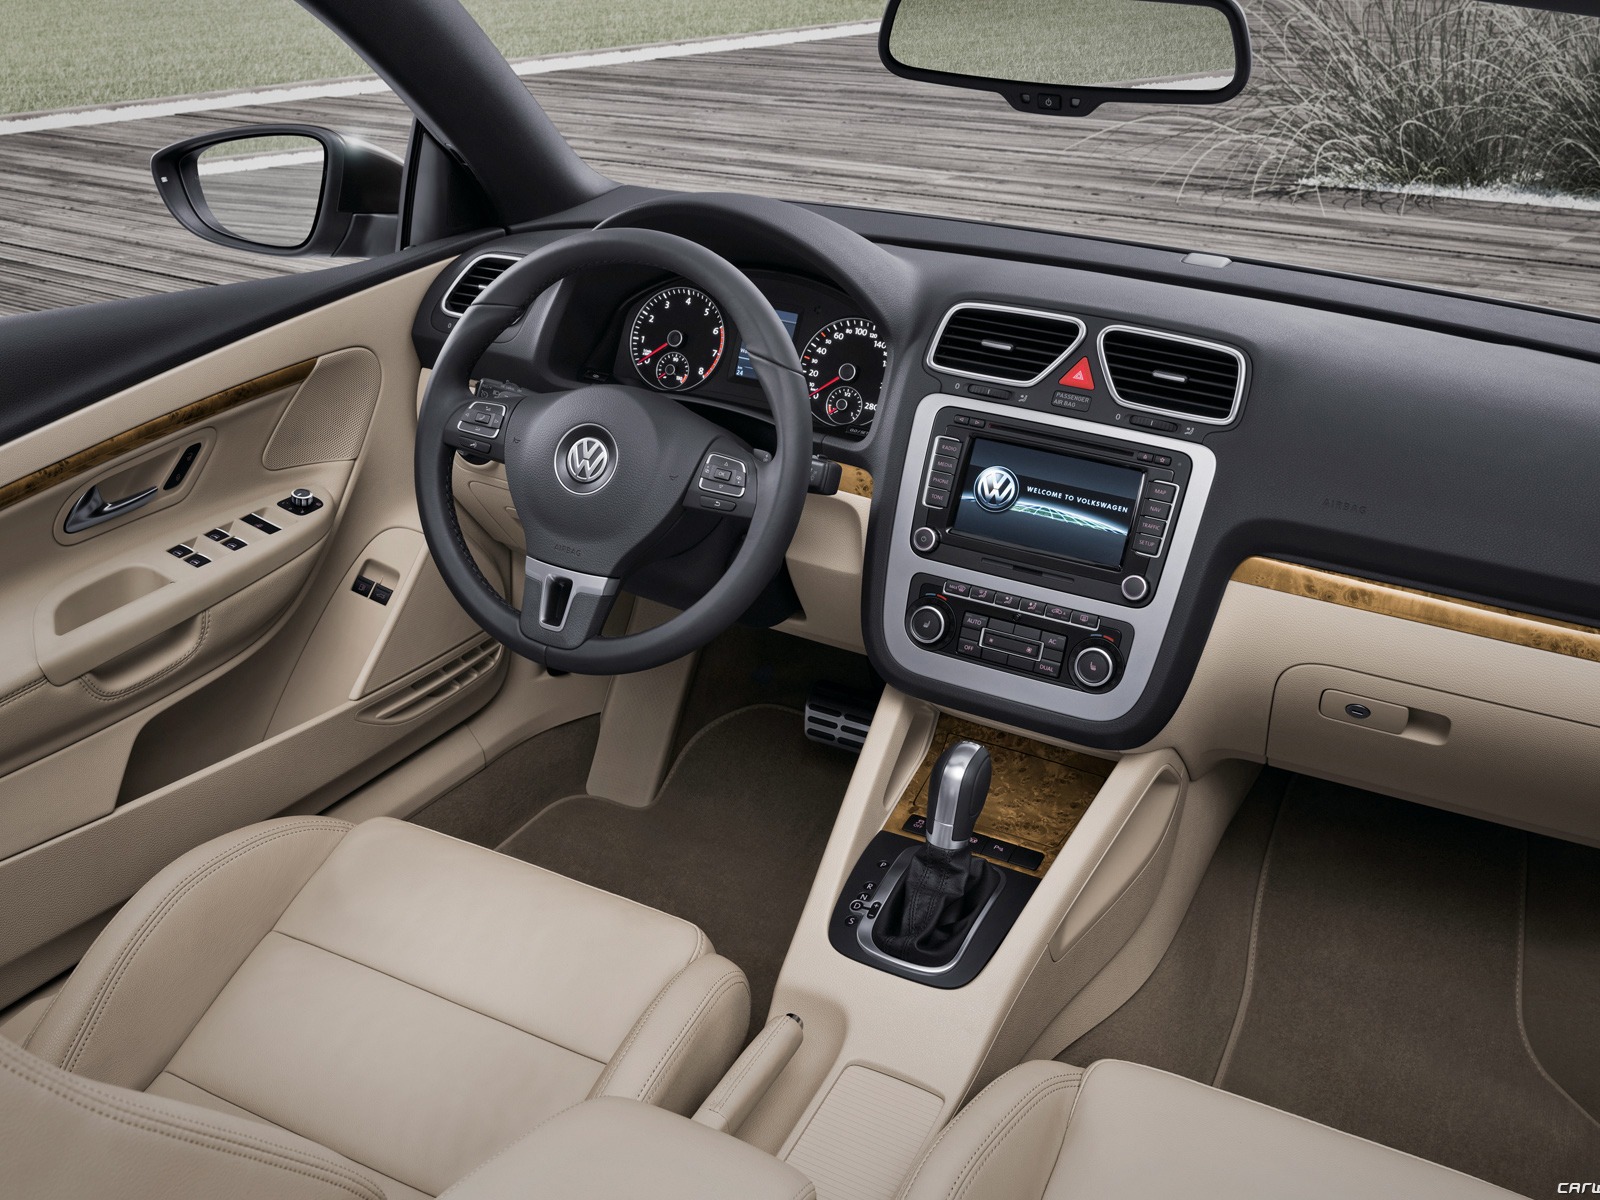 Volkswagen Eos - 2011 大众15 - 1600x1200